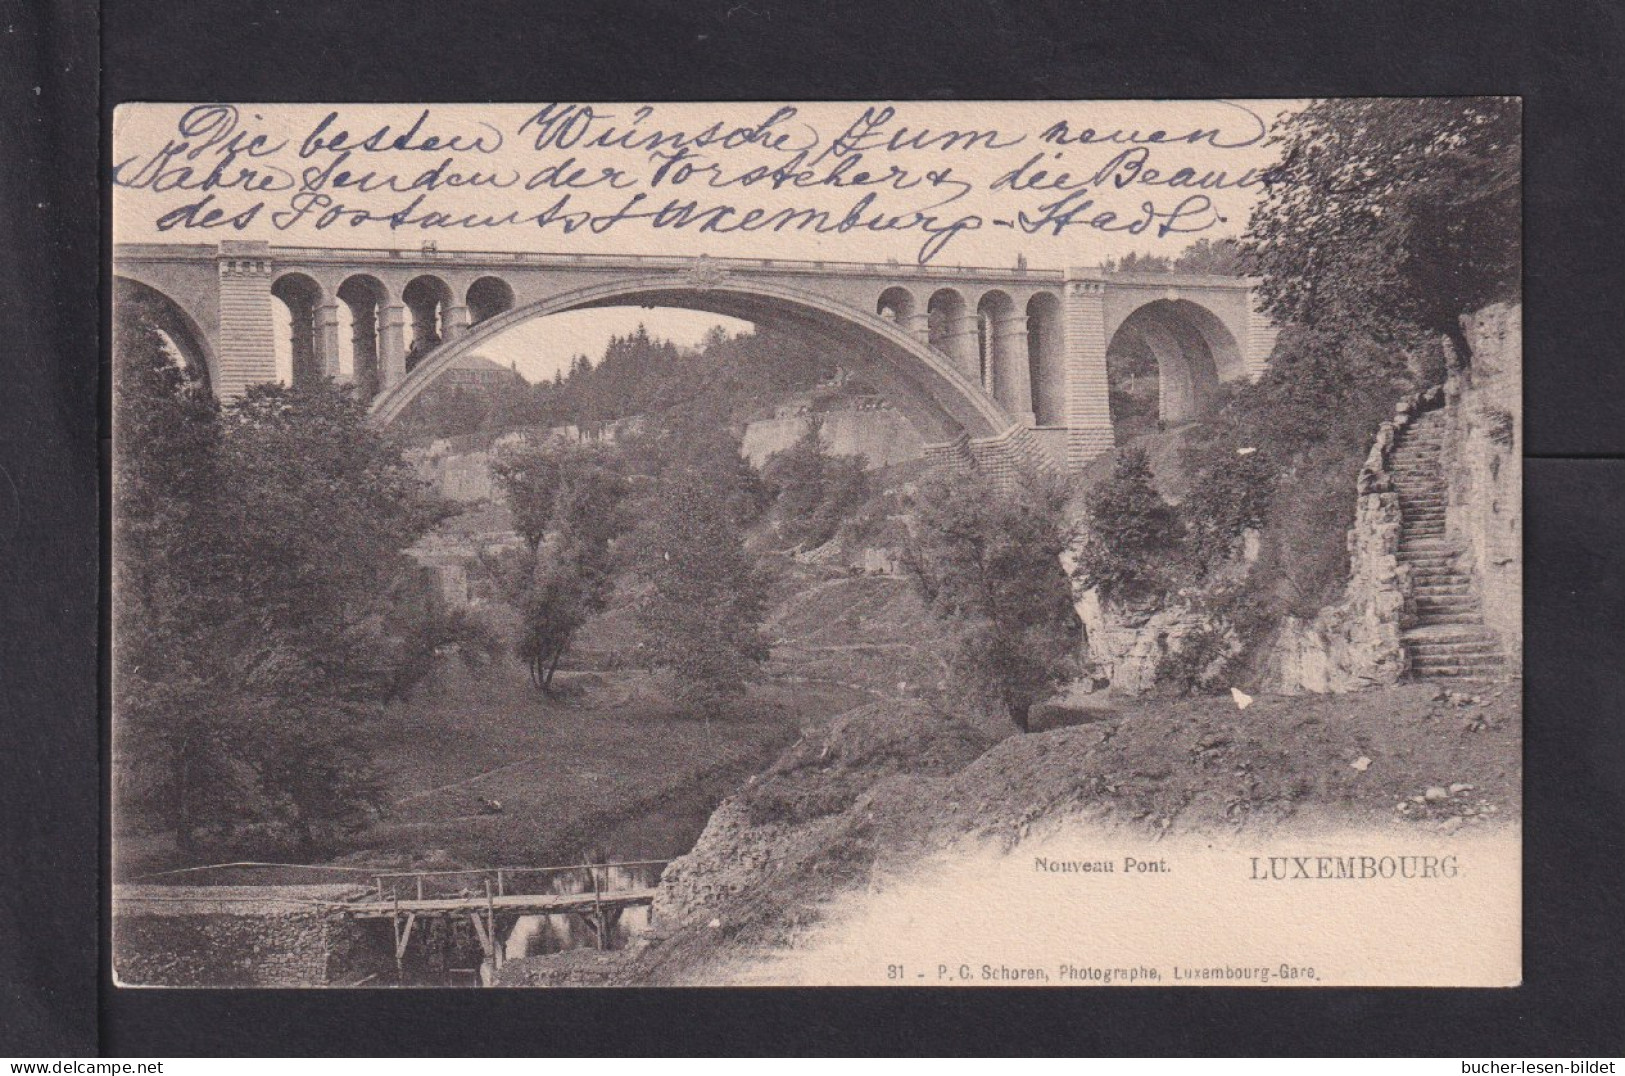 1905 - Unfrankierte Karte Ab Luxemburg Nach Karlsruhe An Das Postamt - 1895 Adolfo De Perfíl